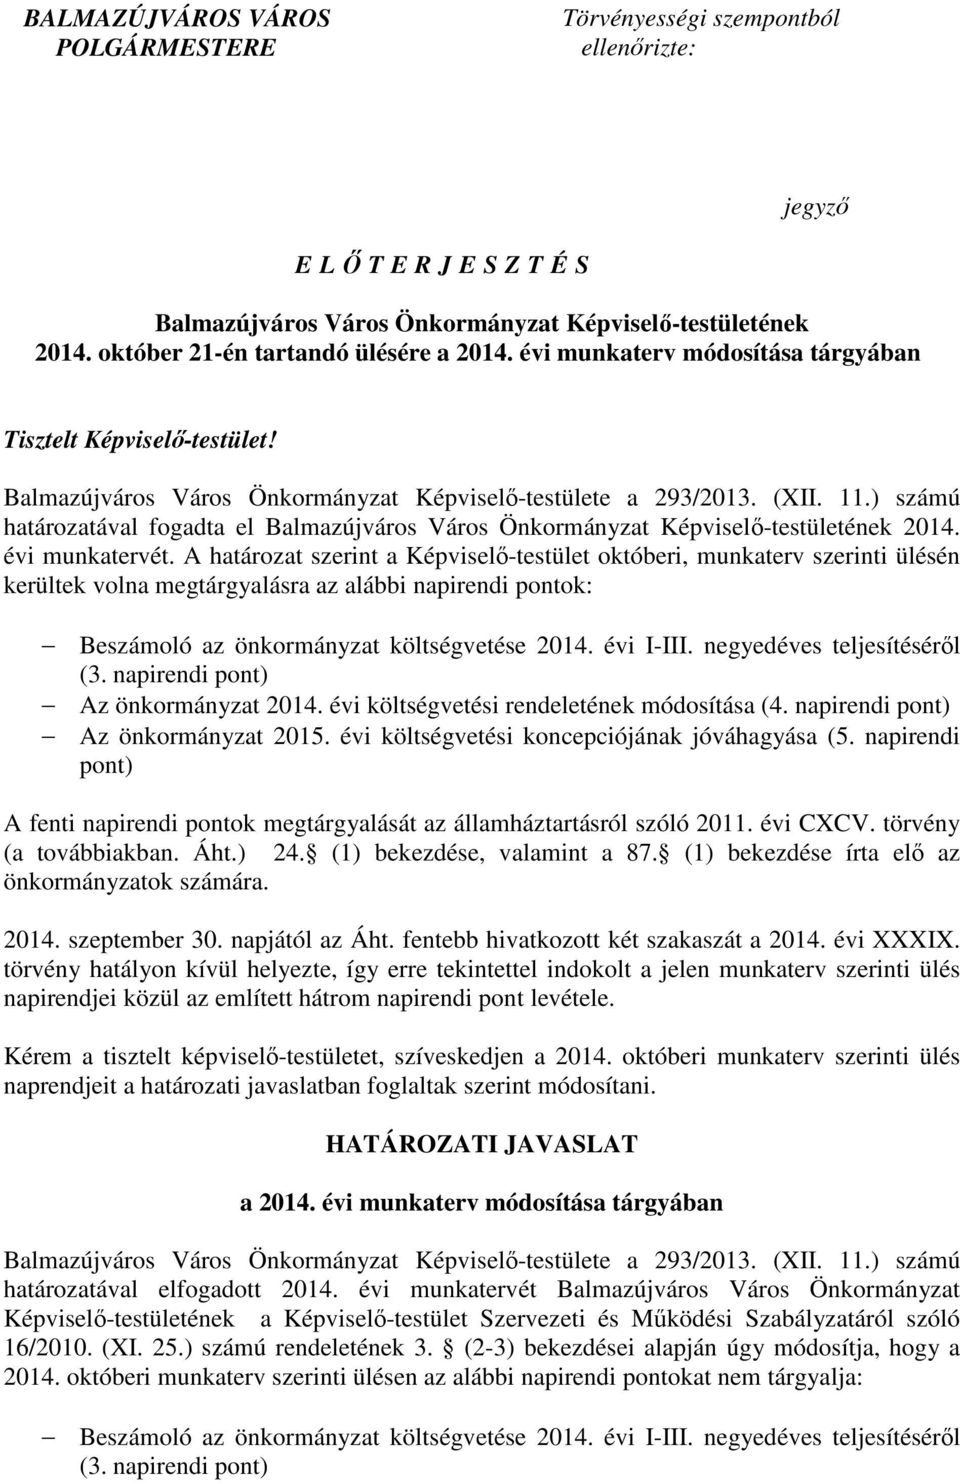 ) számú határozatával fogadta el Balmazújváros Város Önkormányzat Képviselı-testületének 2014. évi munkatervét.